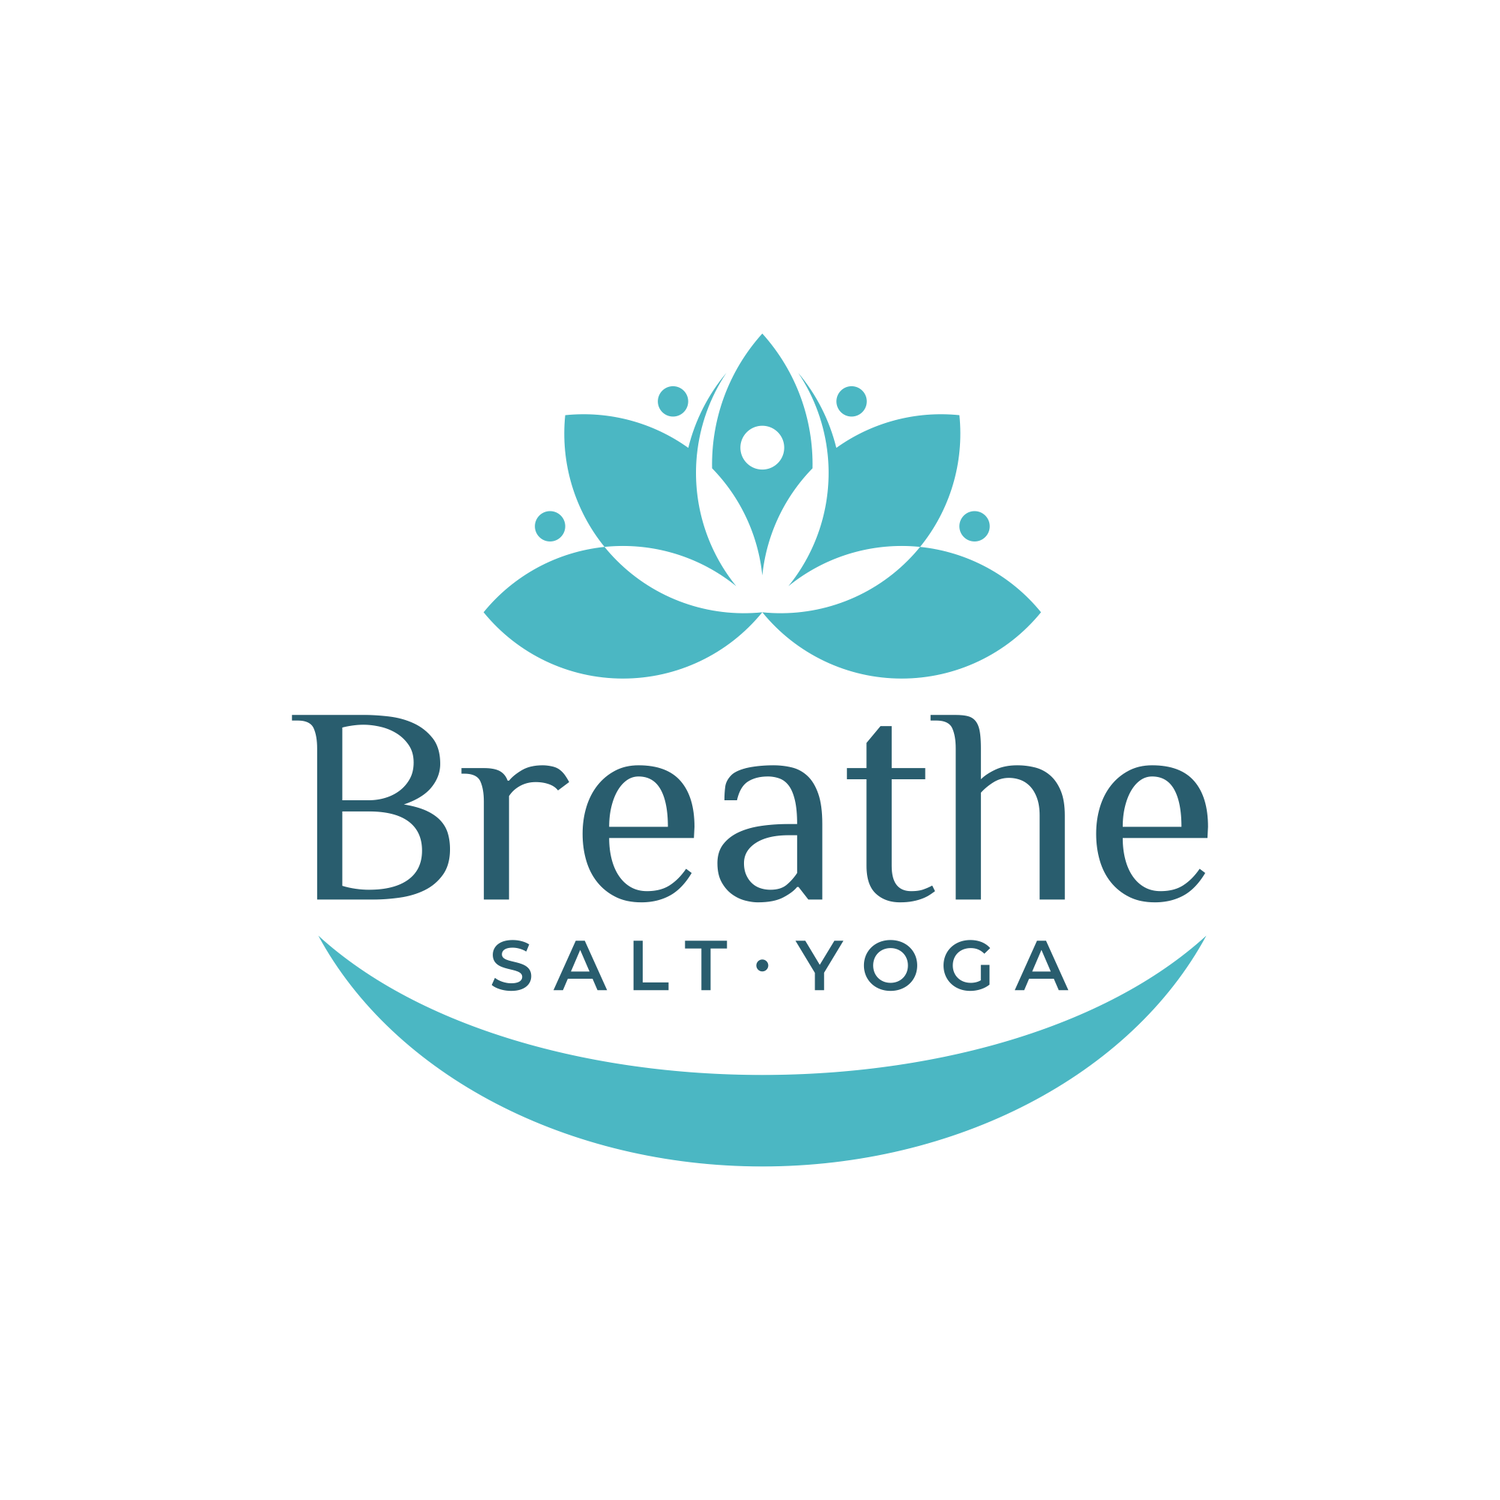 Breathe Salt Yoga Jupiter, FL. WE are a hot yoga studio offering